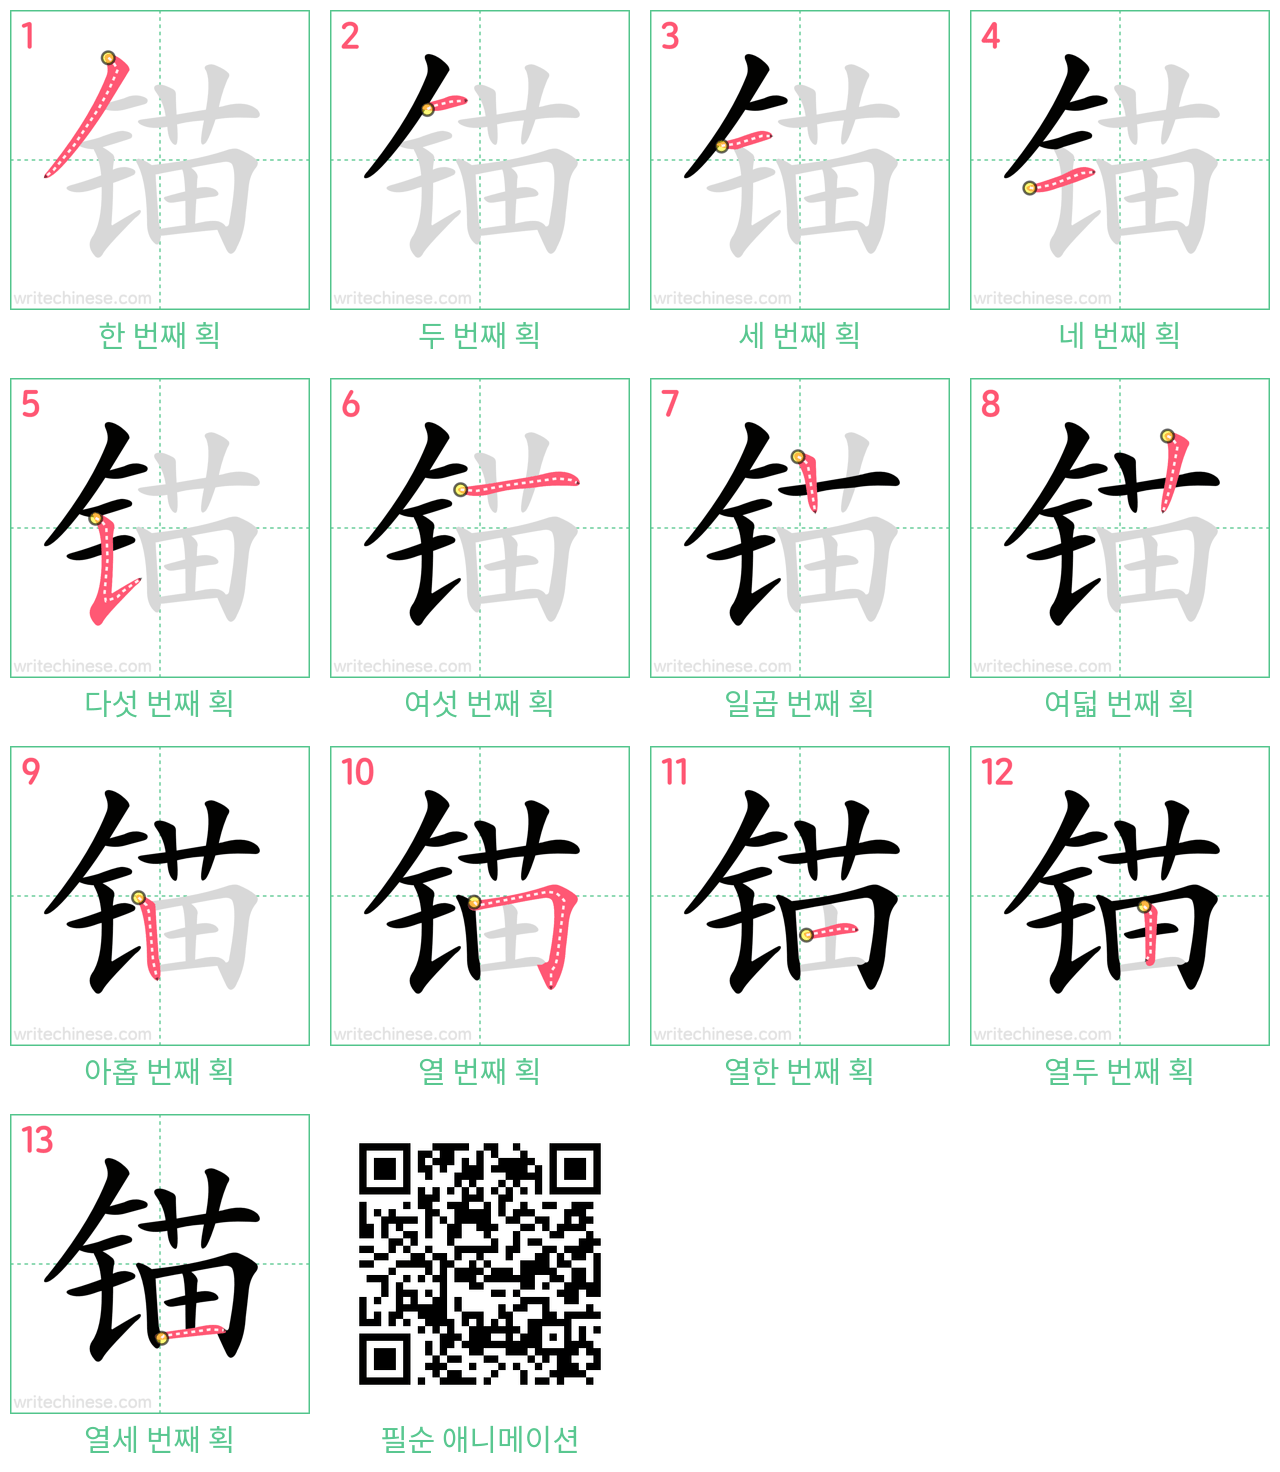 锚 step-by-step stroke order diagrams